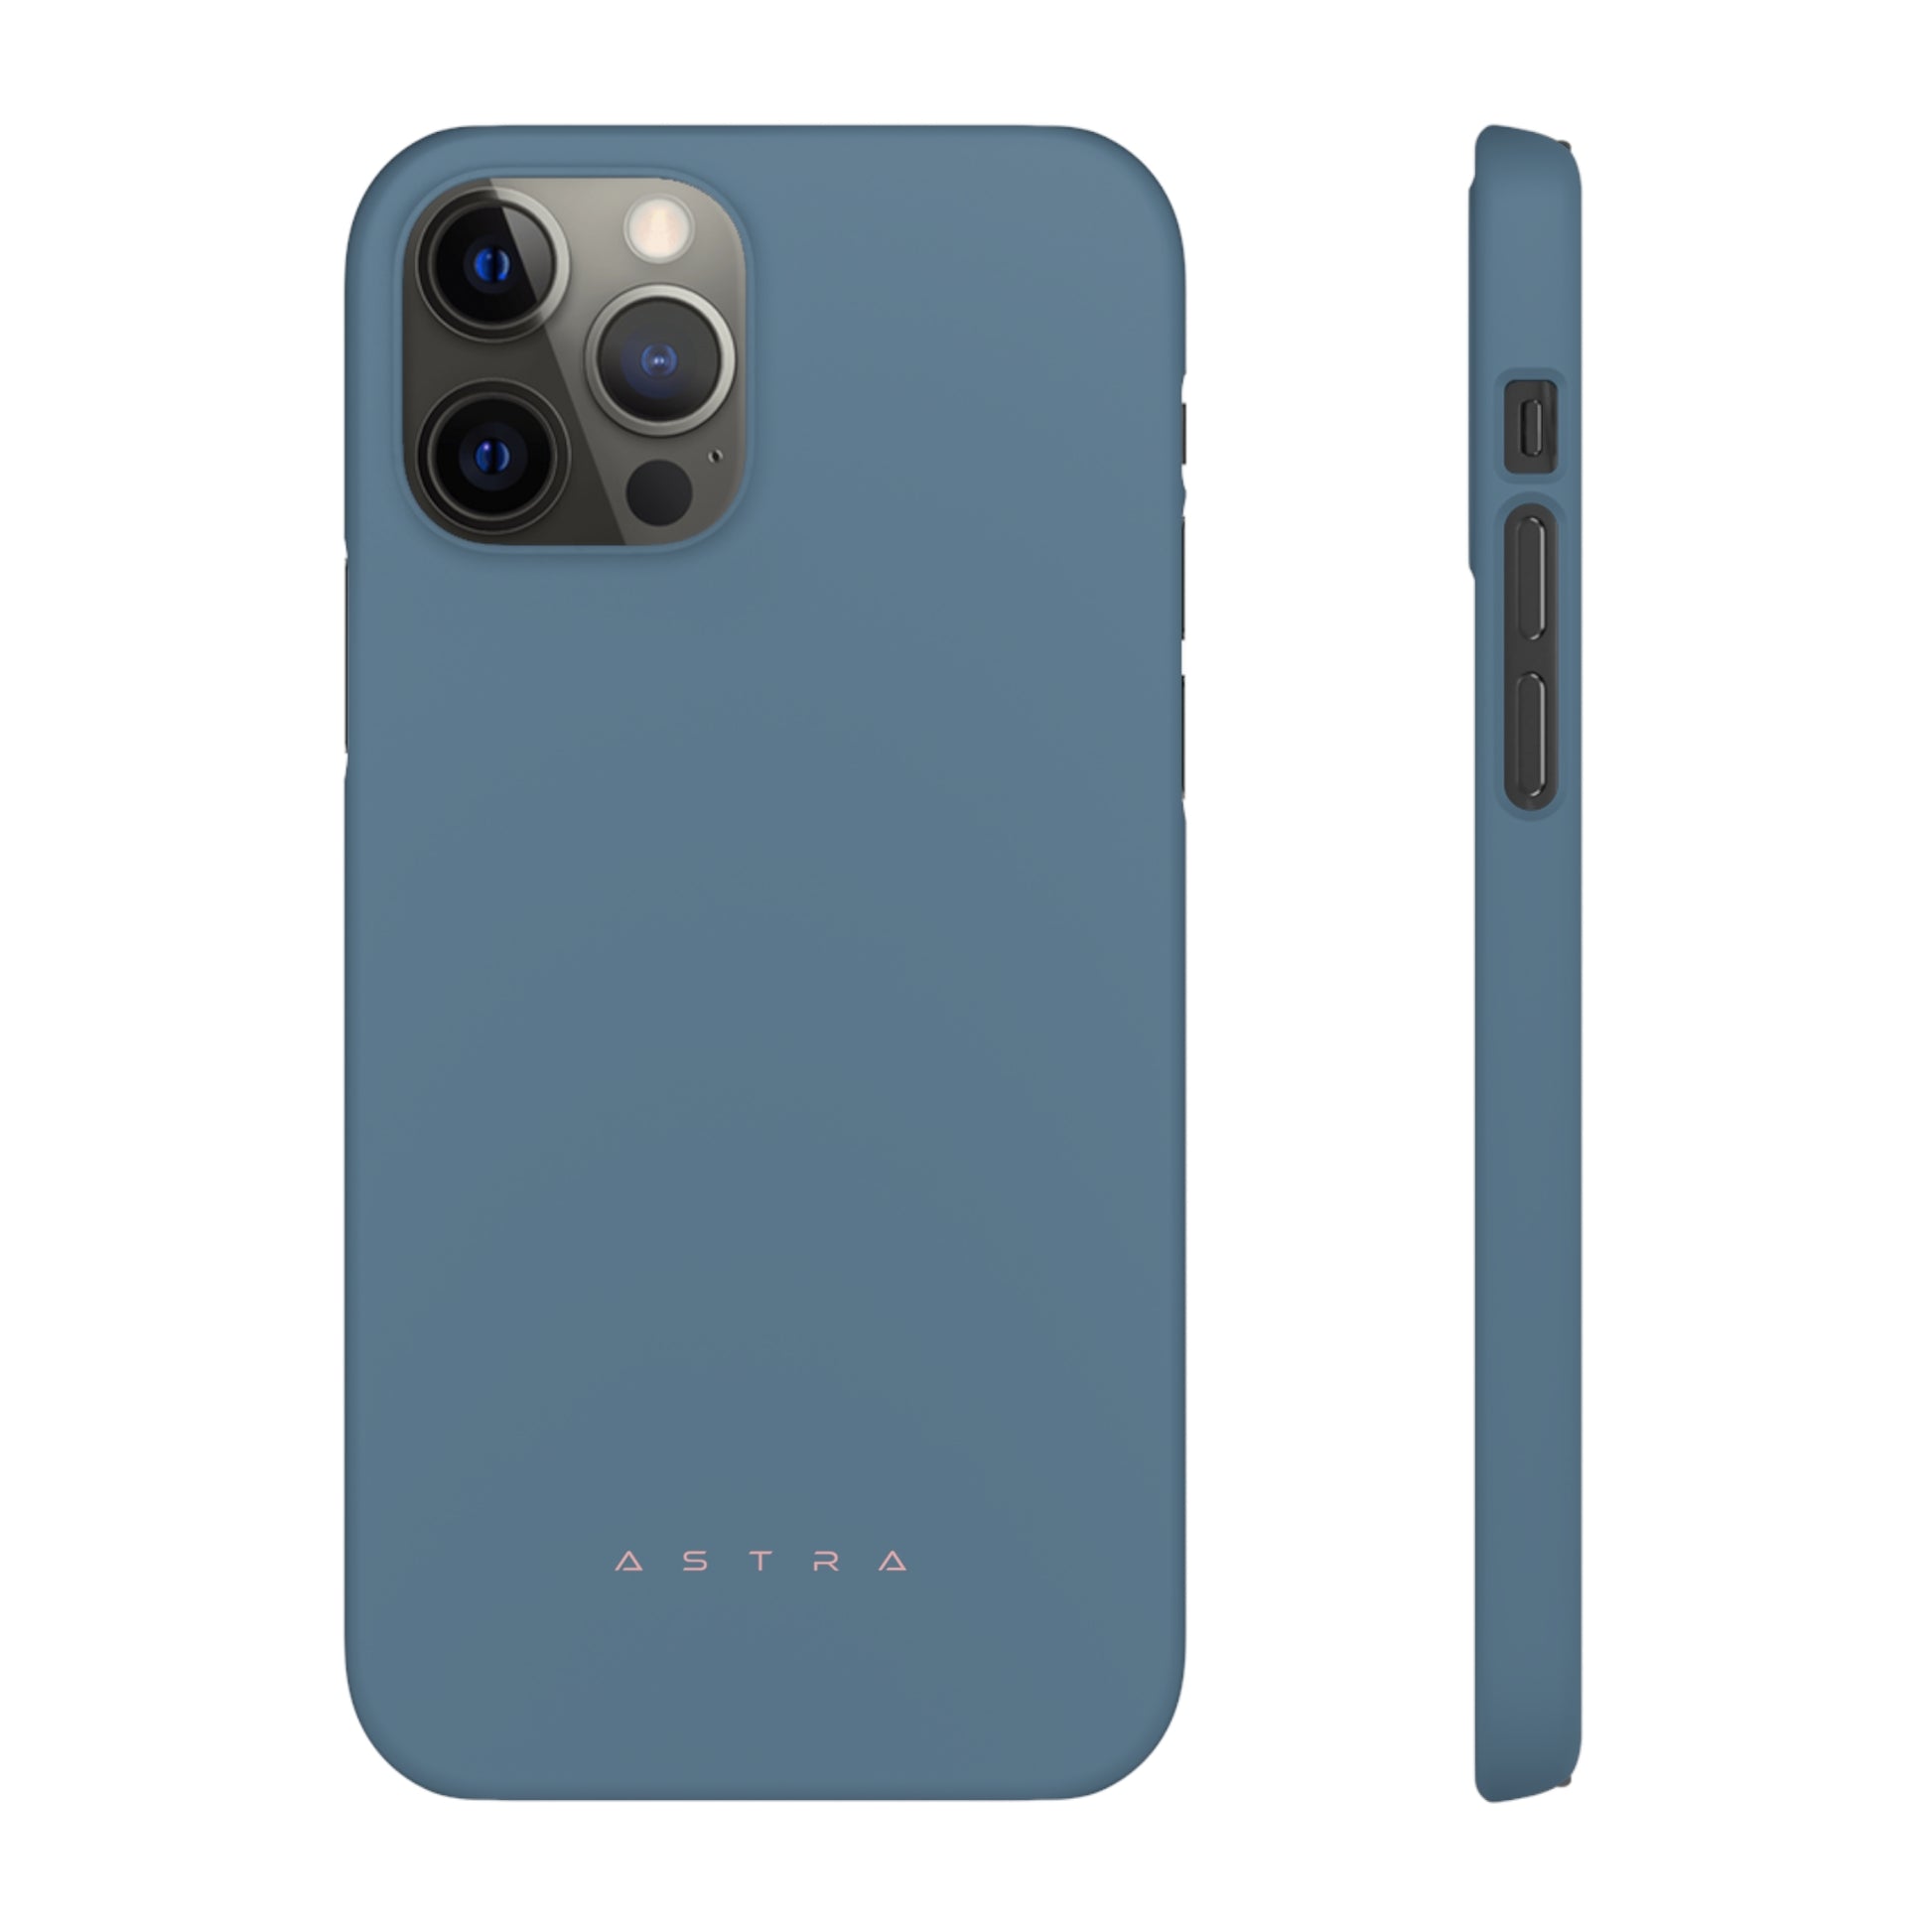 Blue Titanium iPhone 12 Pro Matte Phone Case Accessories Classic Glossy iPhone Cases Matte Phone Cases Samsung Cases